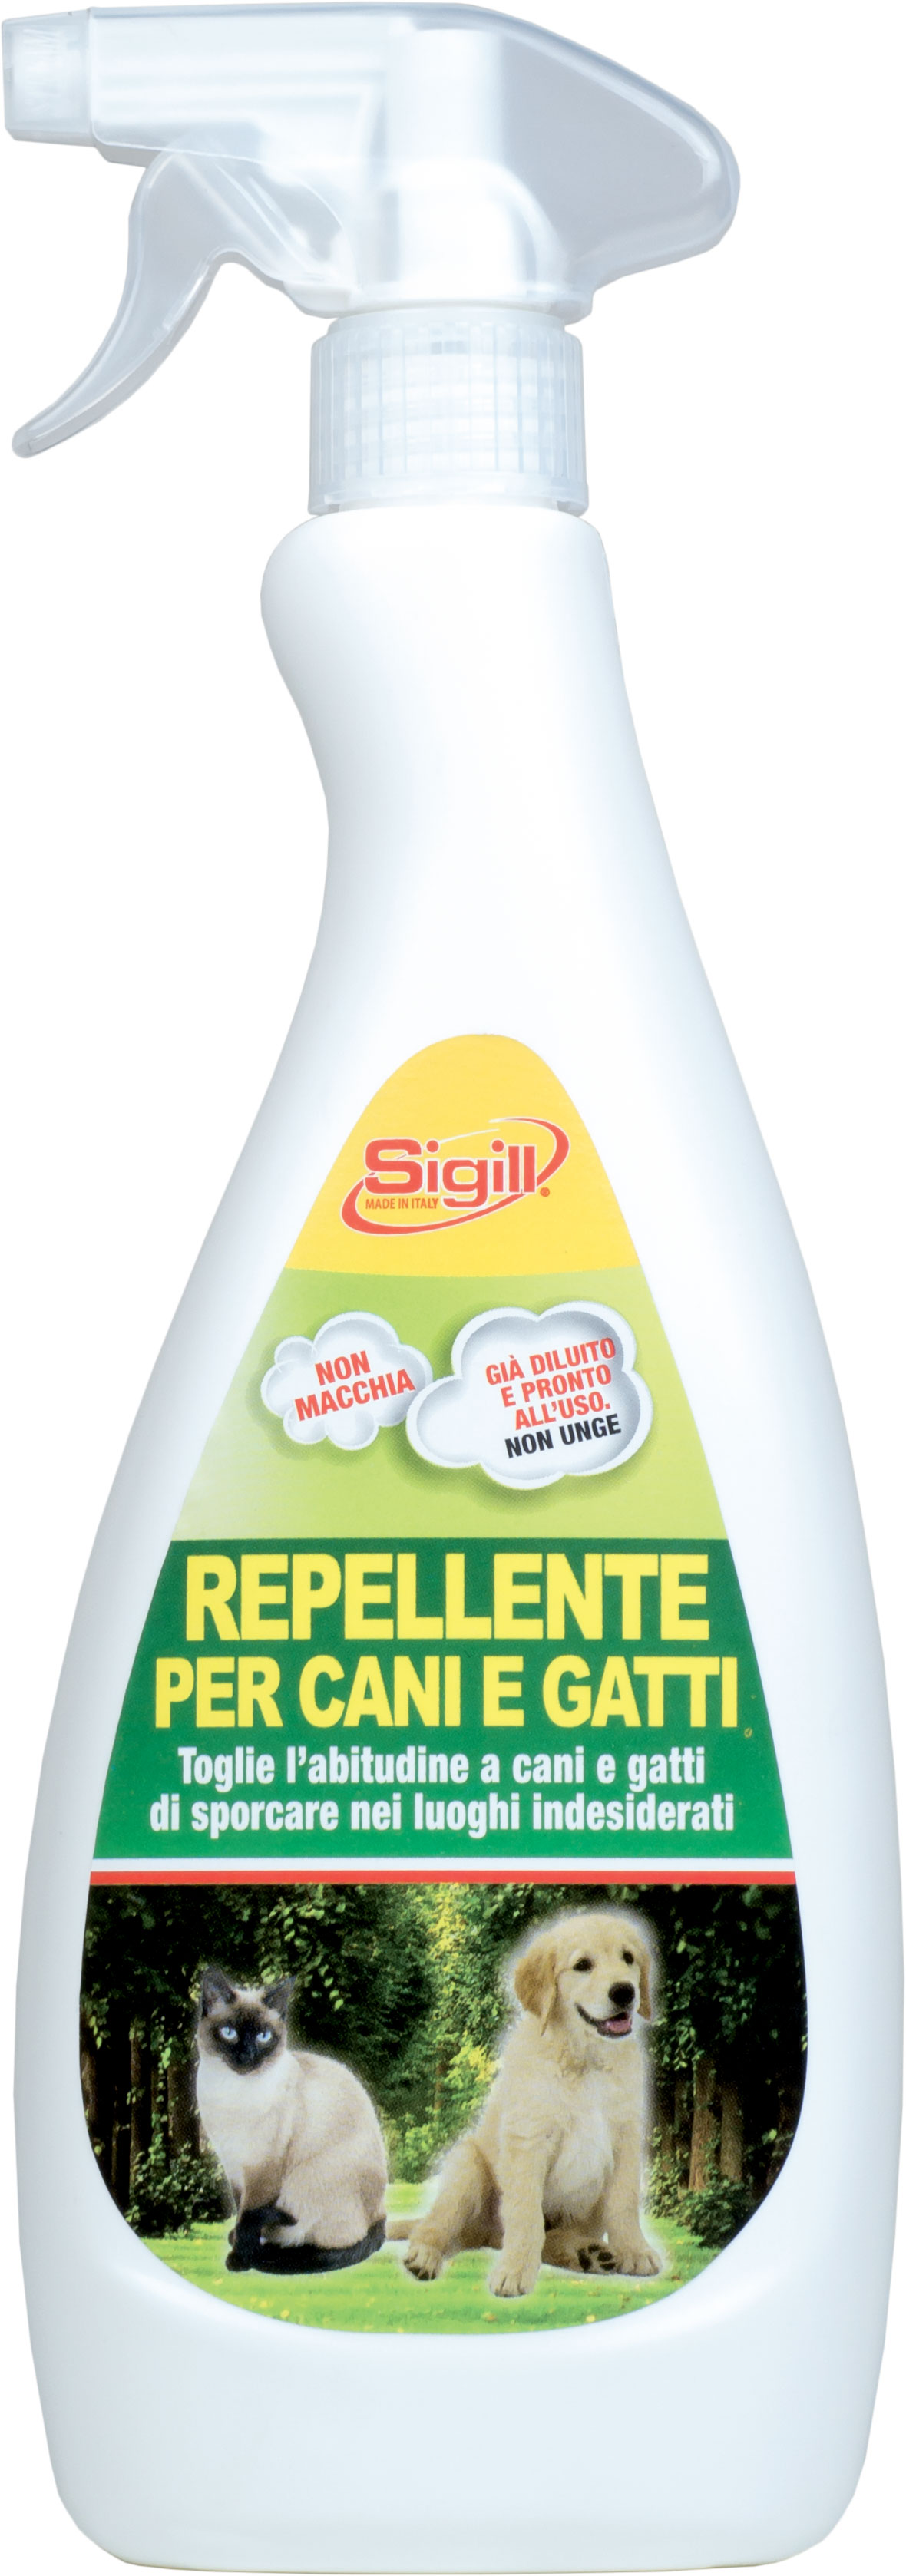 Repellente Cani e Gatti - Sigill